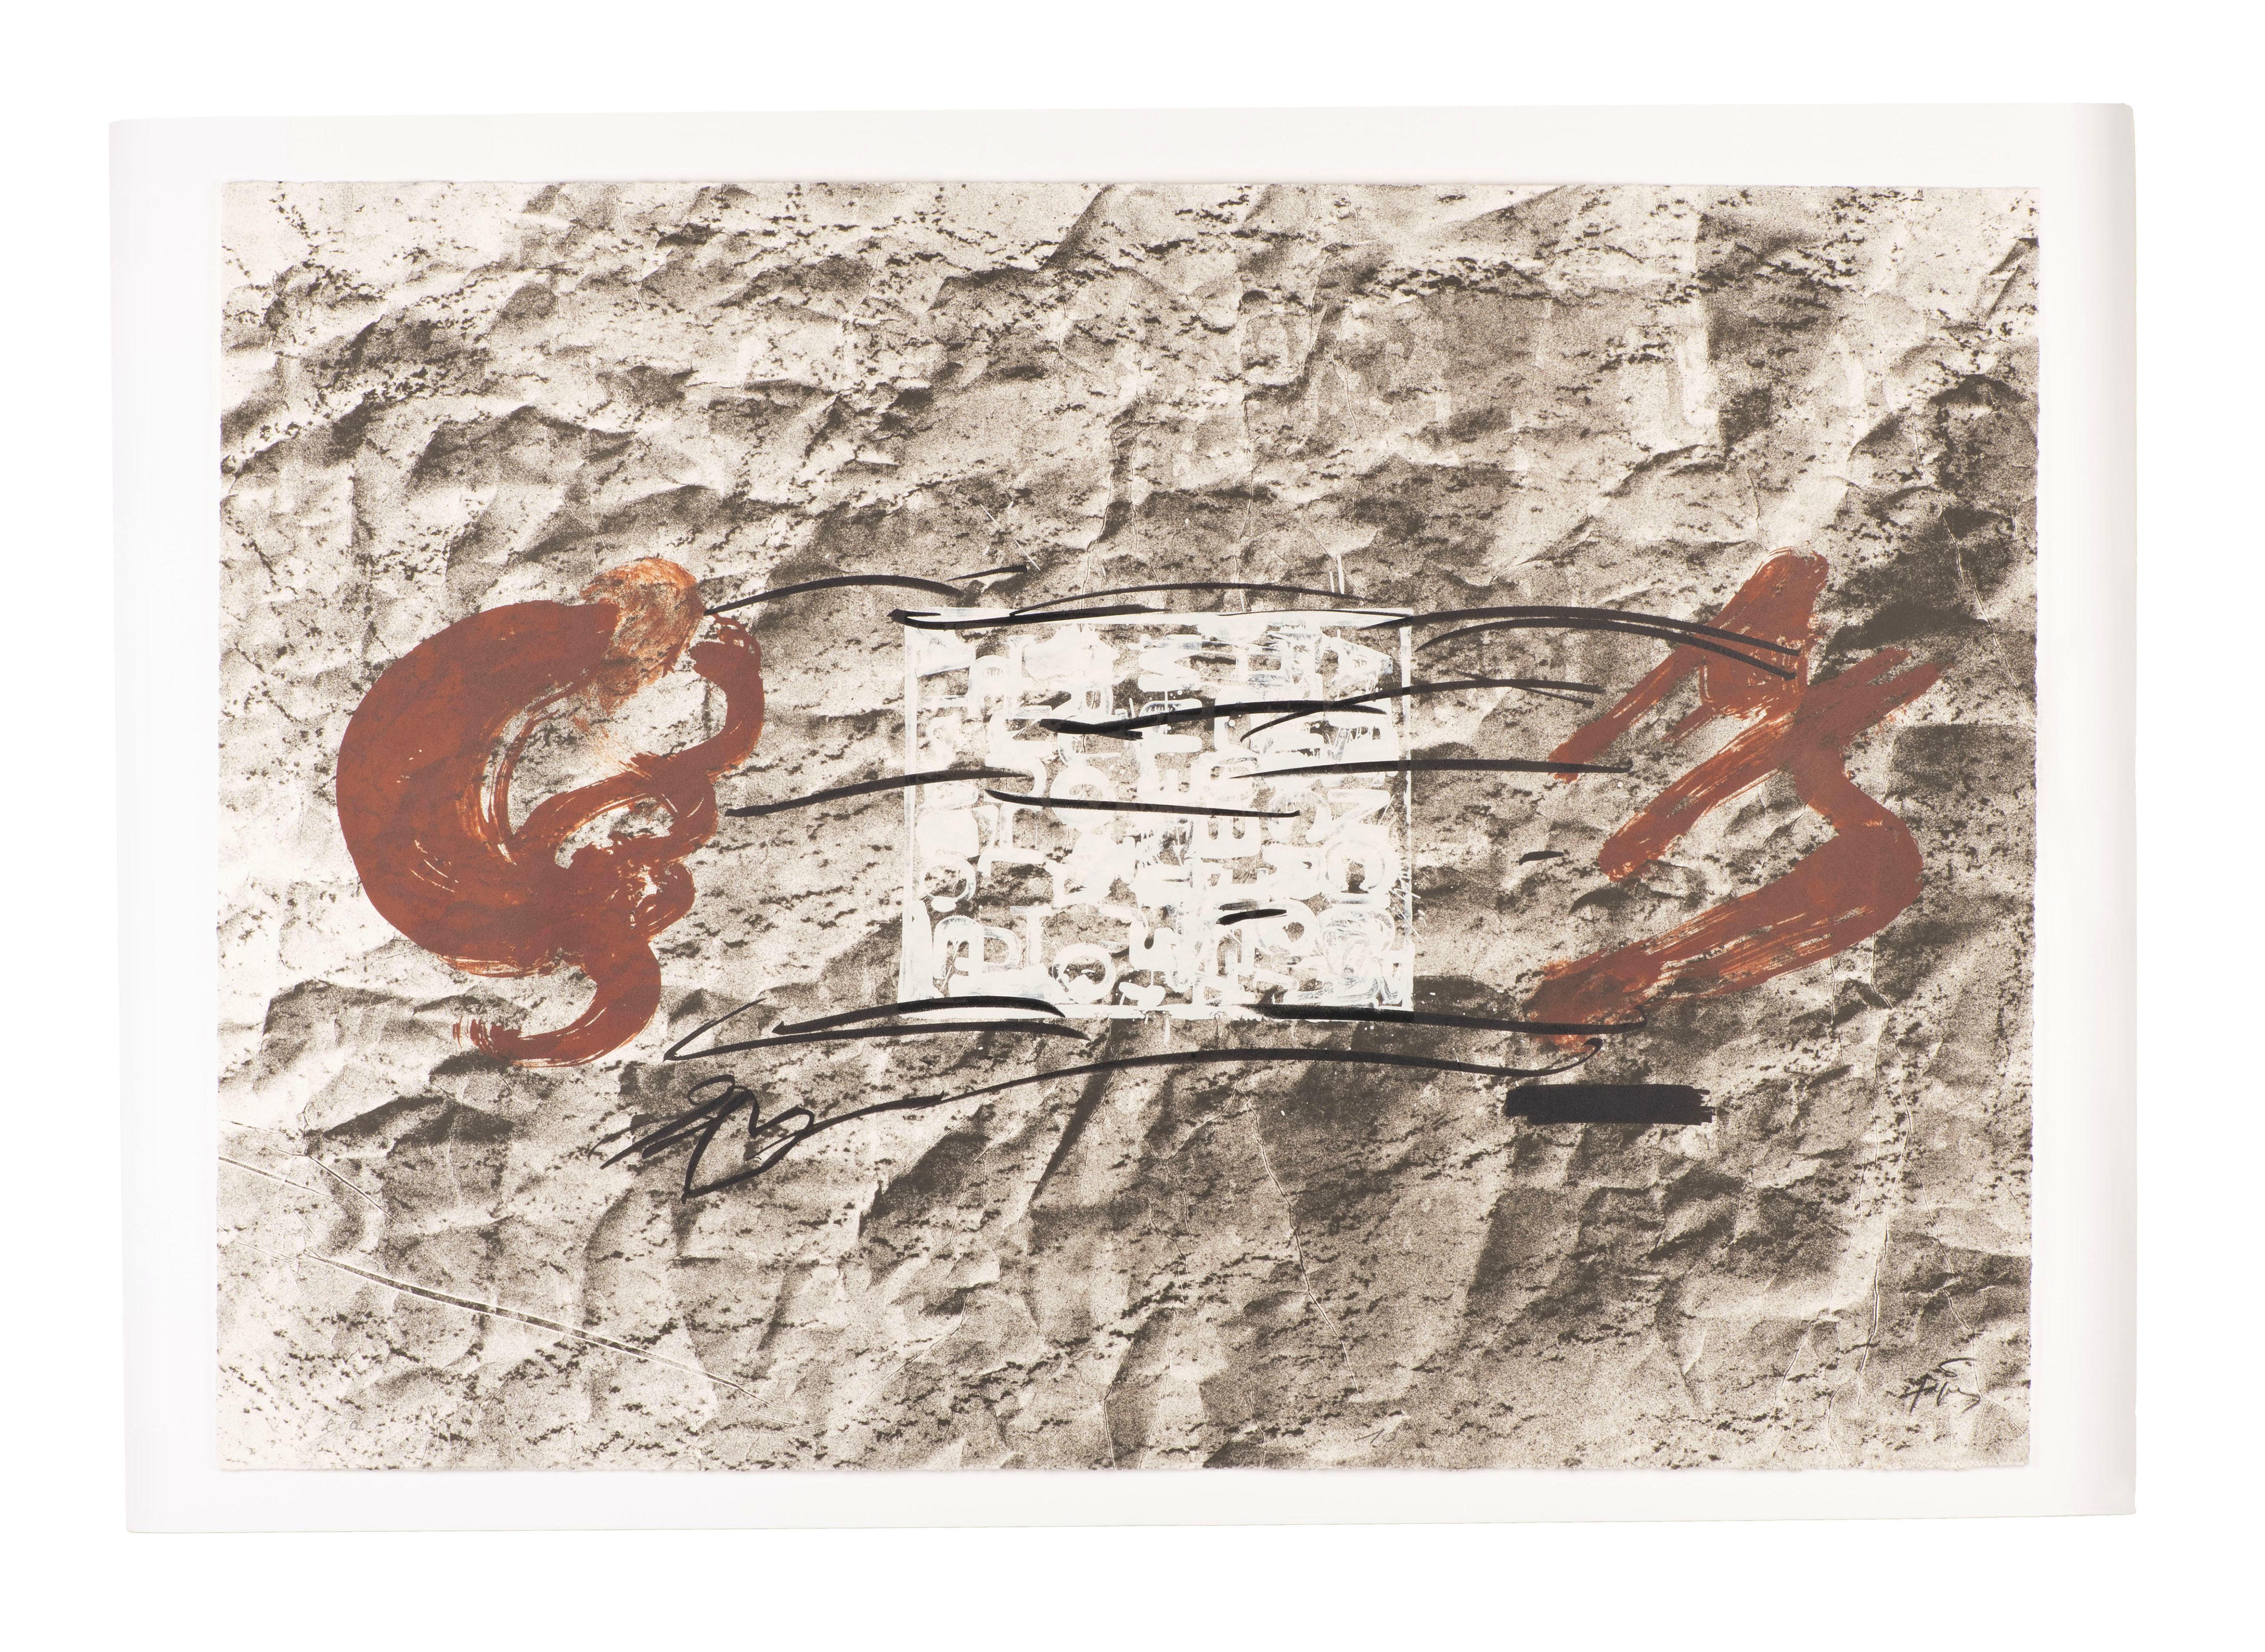 Antoni Tàpies a combiné de riches préoccupations conceptuelles avec des expérimentations matérielles et des échelles monumentales. Son œuvre a été influencée par les premiers modernistes, notamment Paul Klee et Joan Miró, et par des artistes de